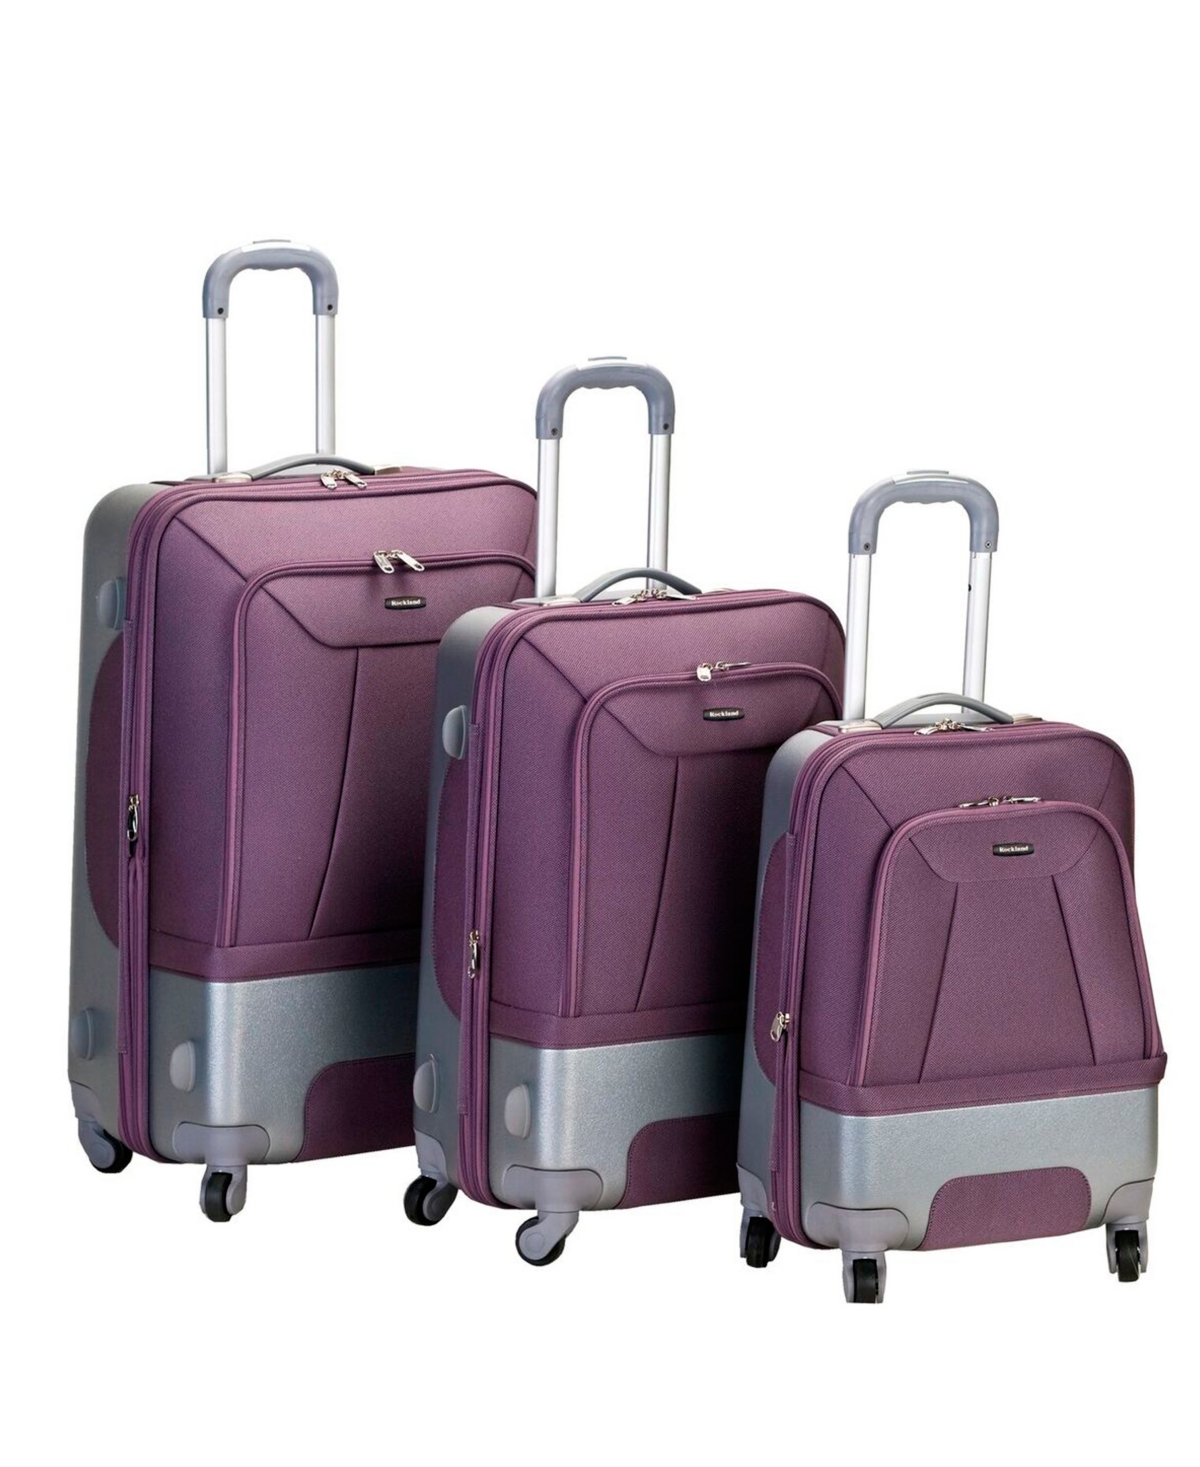 Rome 3-Pc. Hardside Luggage Set - Lavender